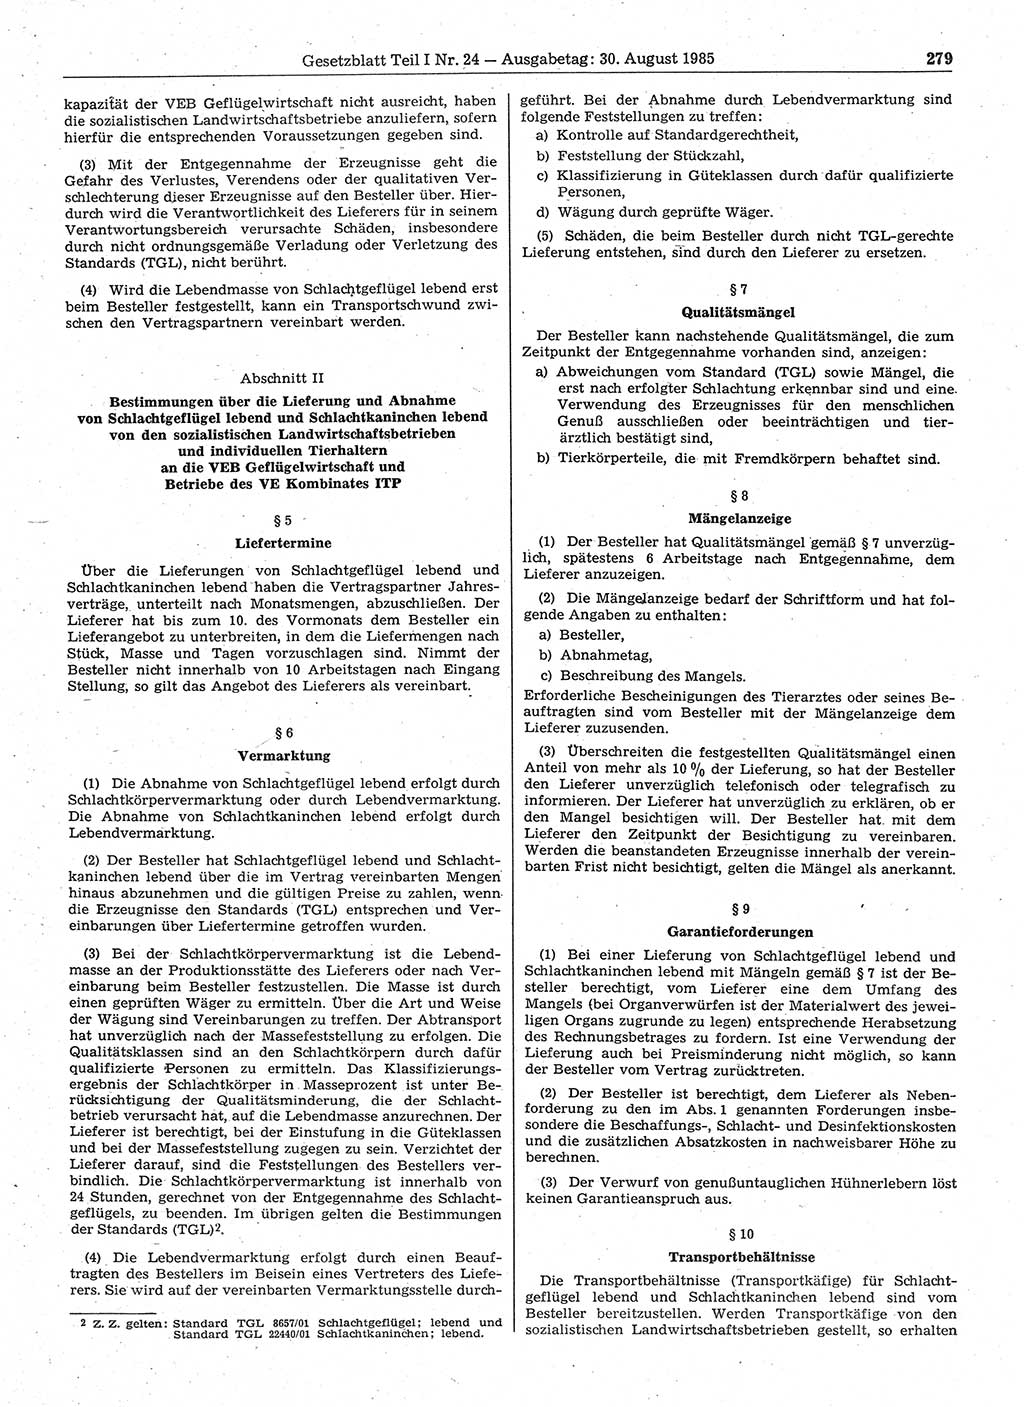 Gesetzblatt (GBl.) der Deutschen Demokratischen Republik (DDR) Teil Ⅰ 1985, Seite 279 (GBl. DDR Ⅰ 1985, S. 279)